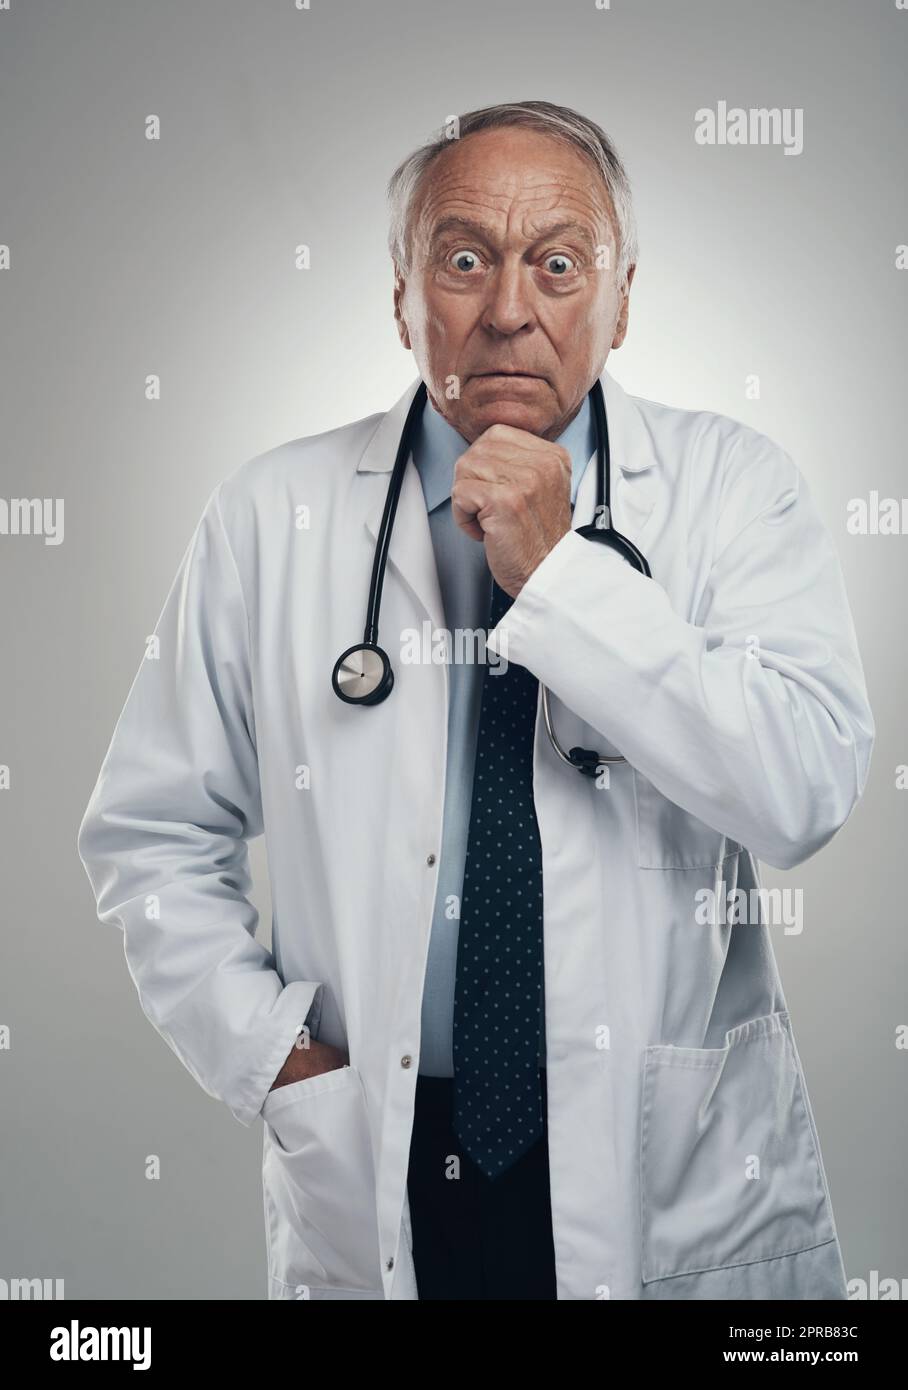 Das ist eine ziemlich schockierende Entwicklung. Ein älterer männlicher Arzt in einem Studio vor grauem Hintergrund. Stockfoto